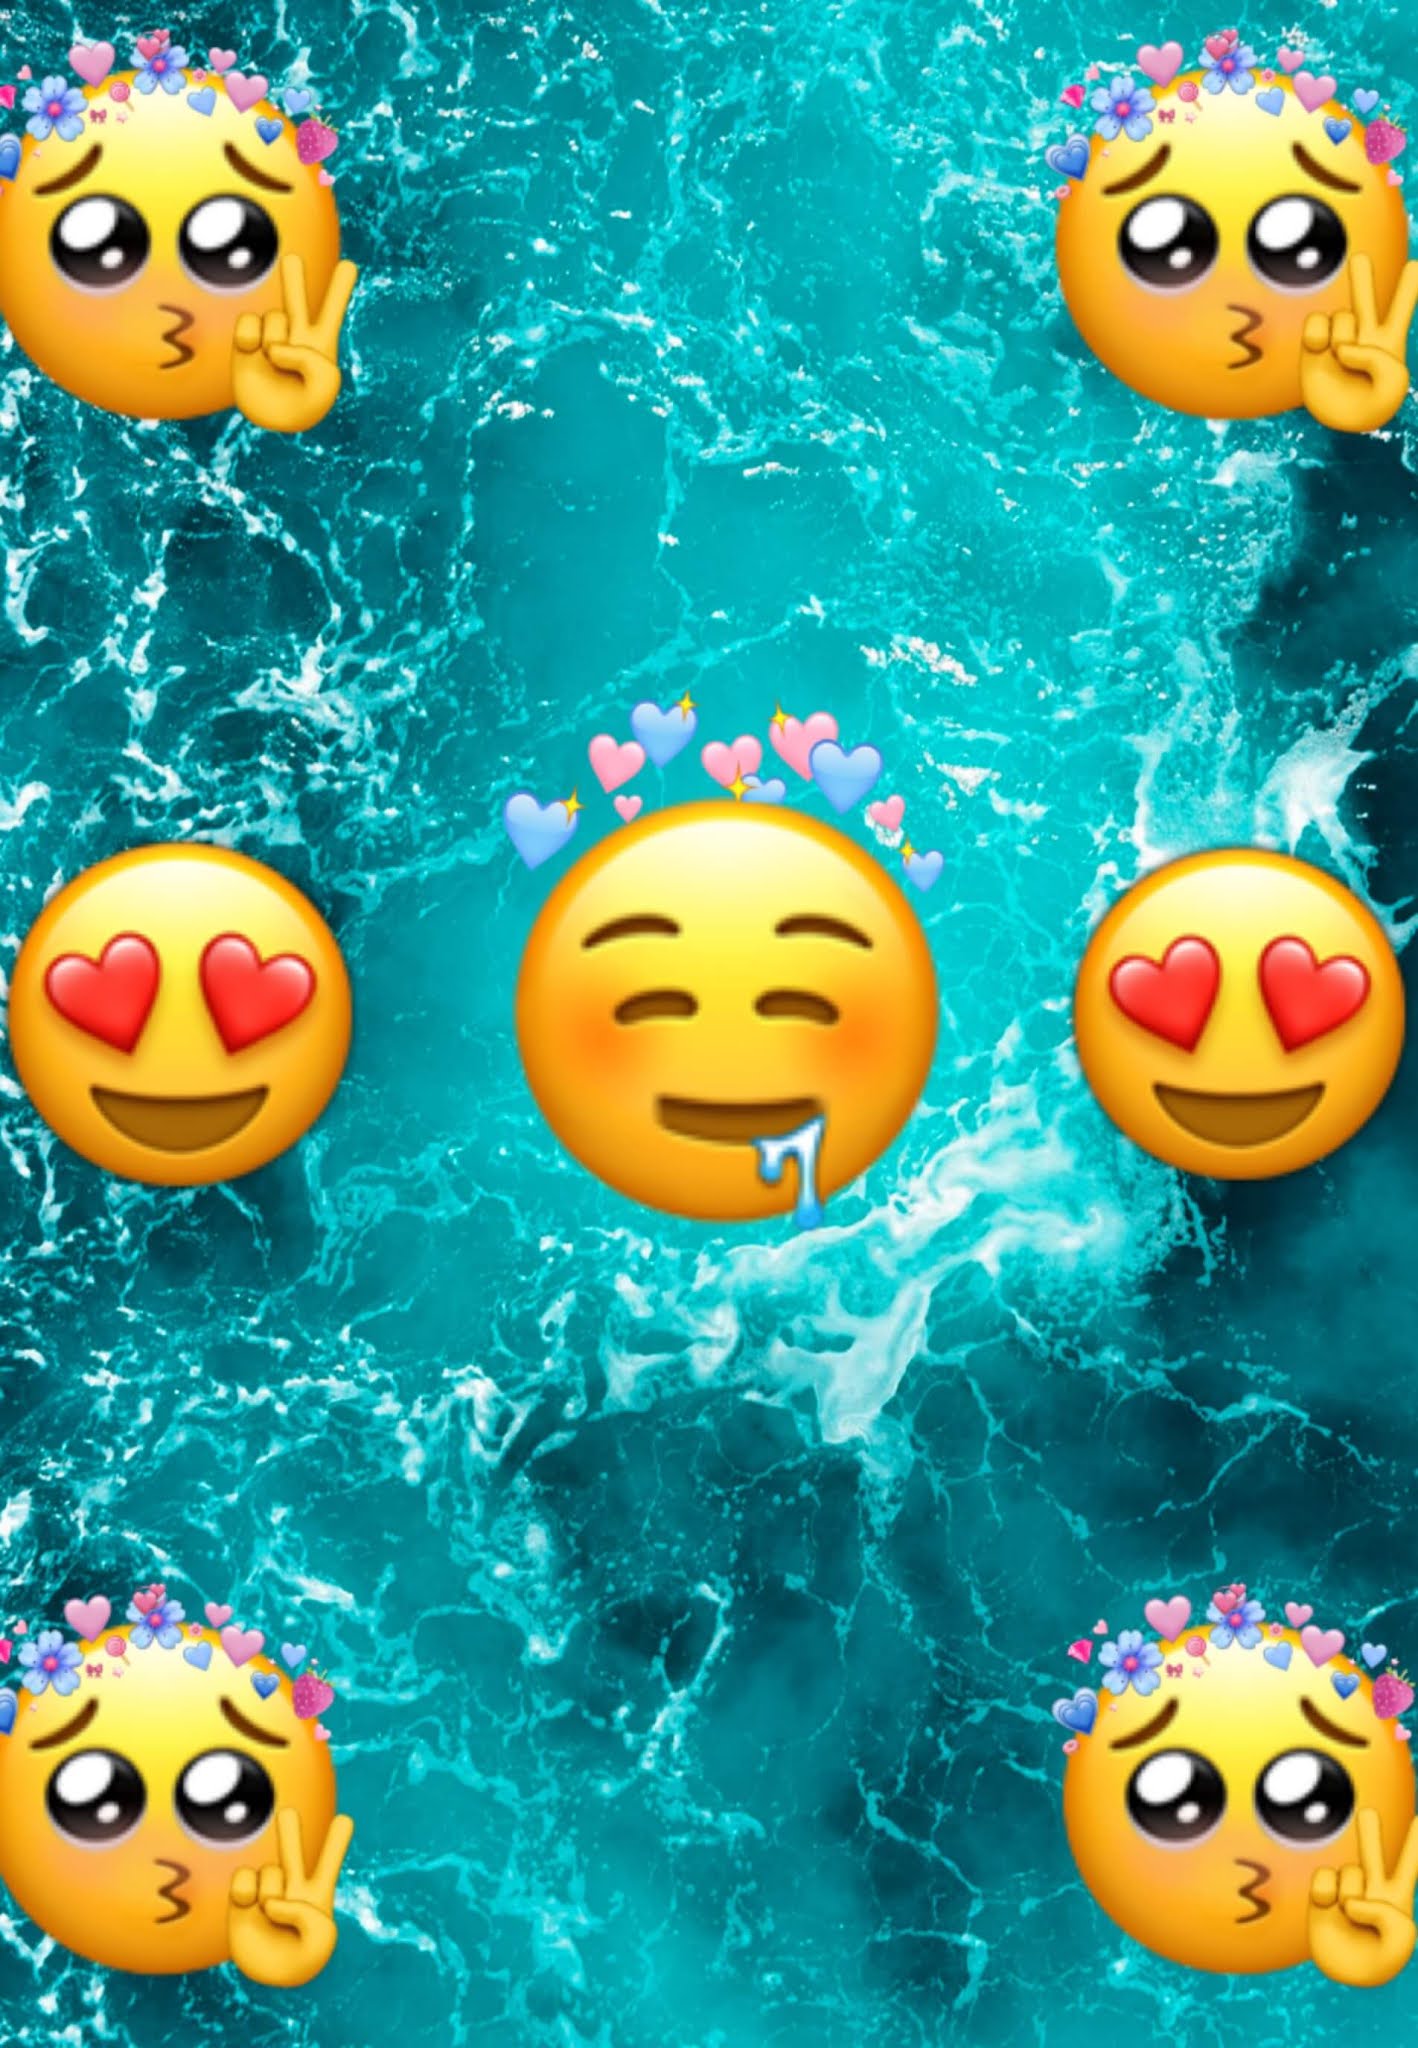 Cute Emojis Wallpapers Wallpapers